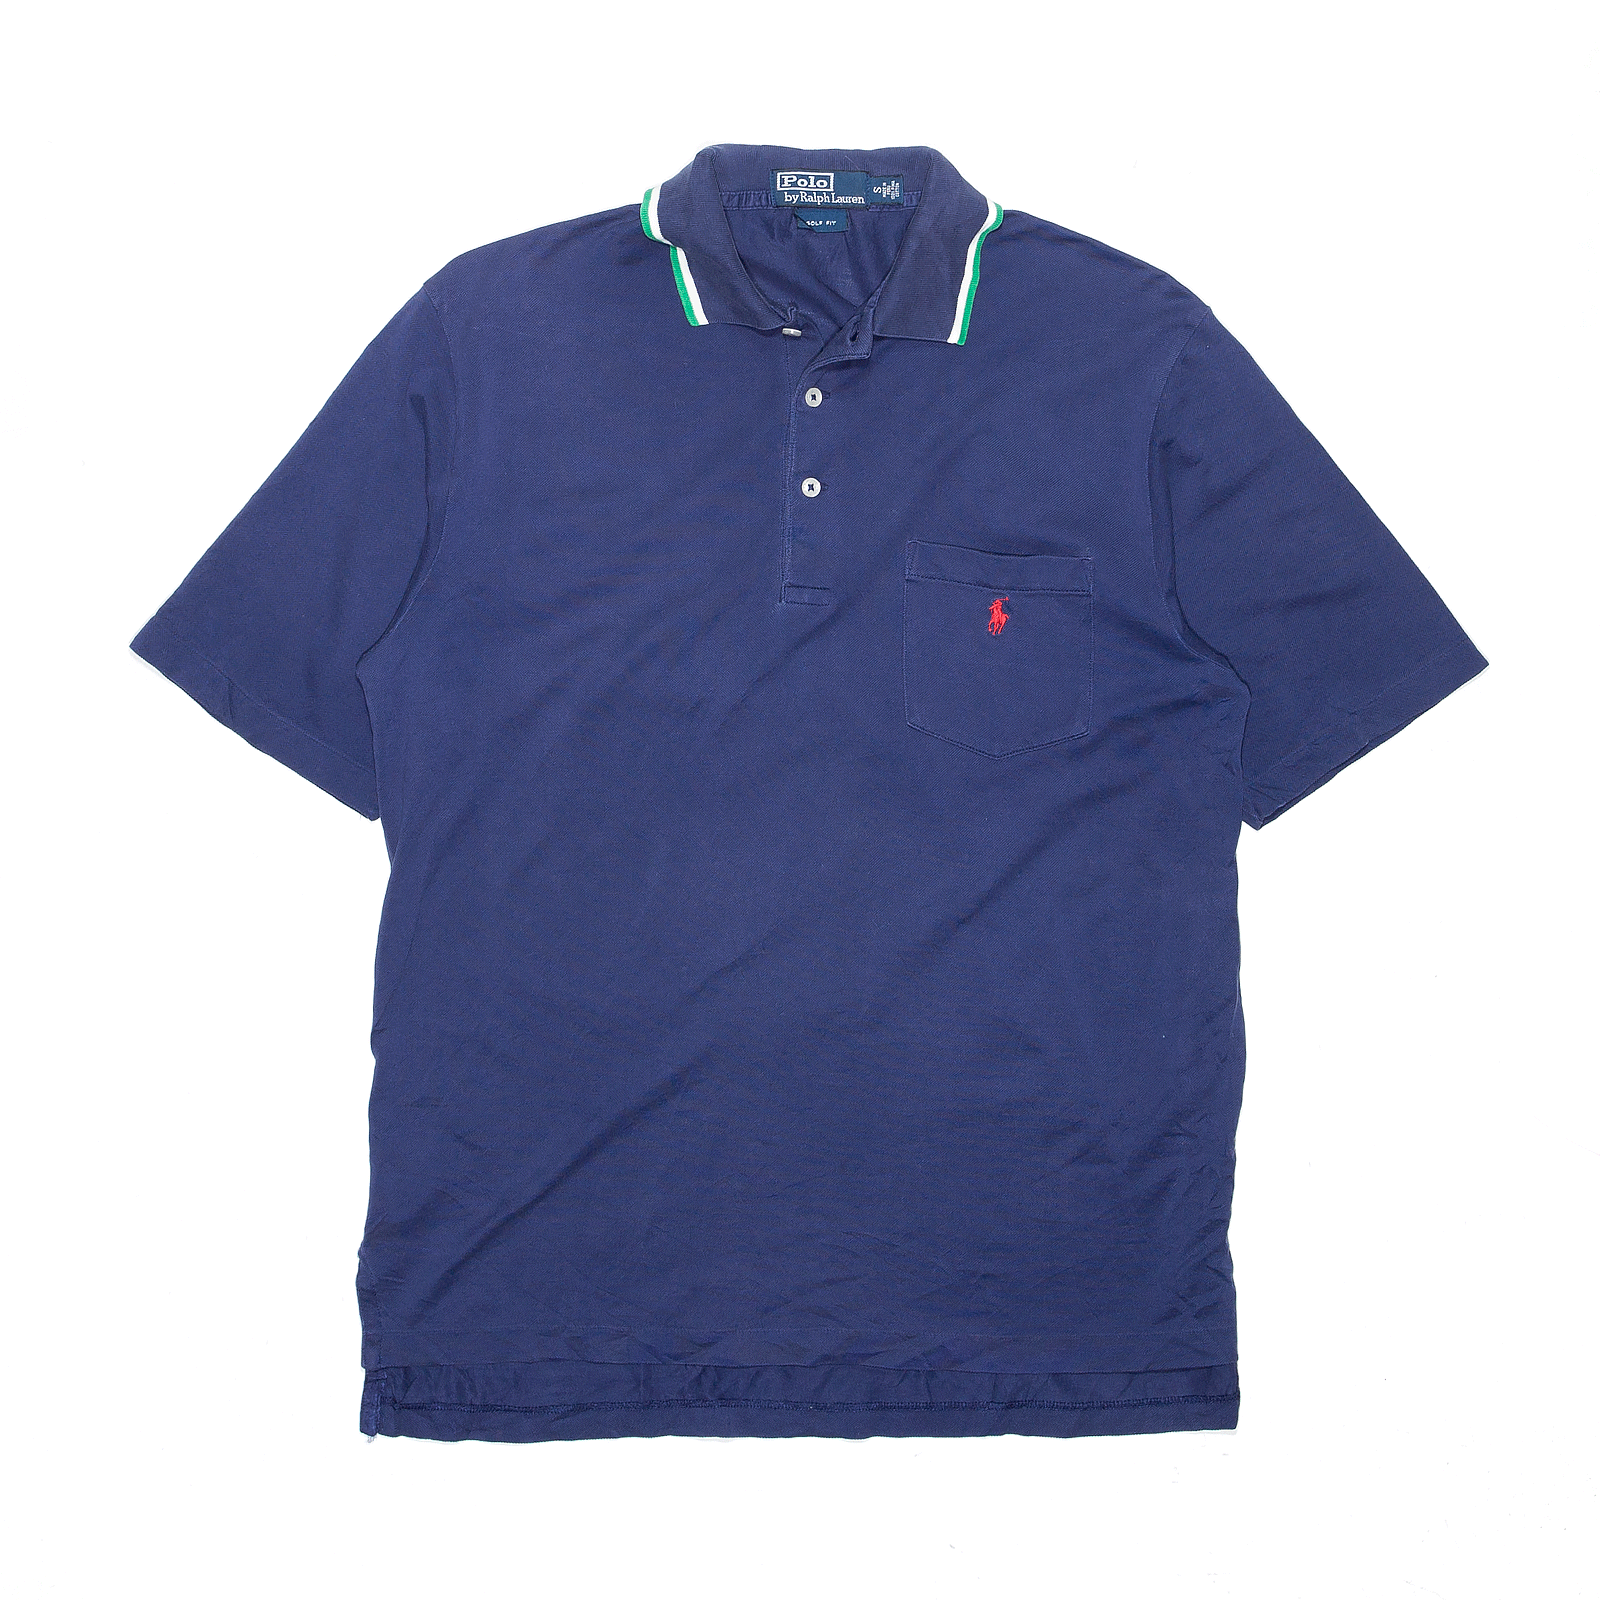 POLO RALPH LAUREN Golf Fit Blue Short Sleeve Polo Shirt Mens S